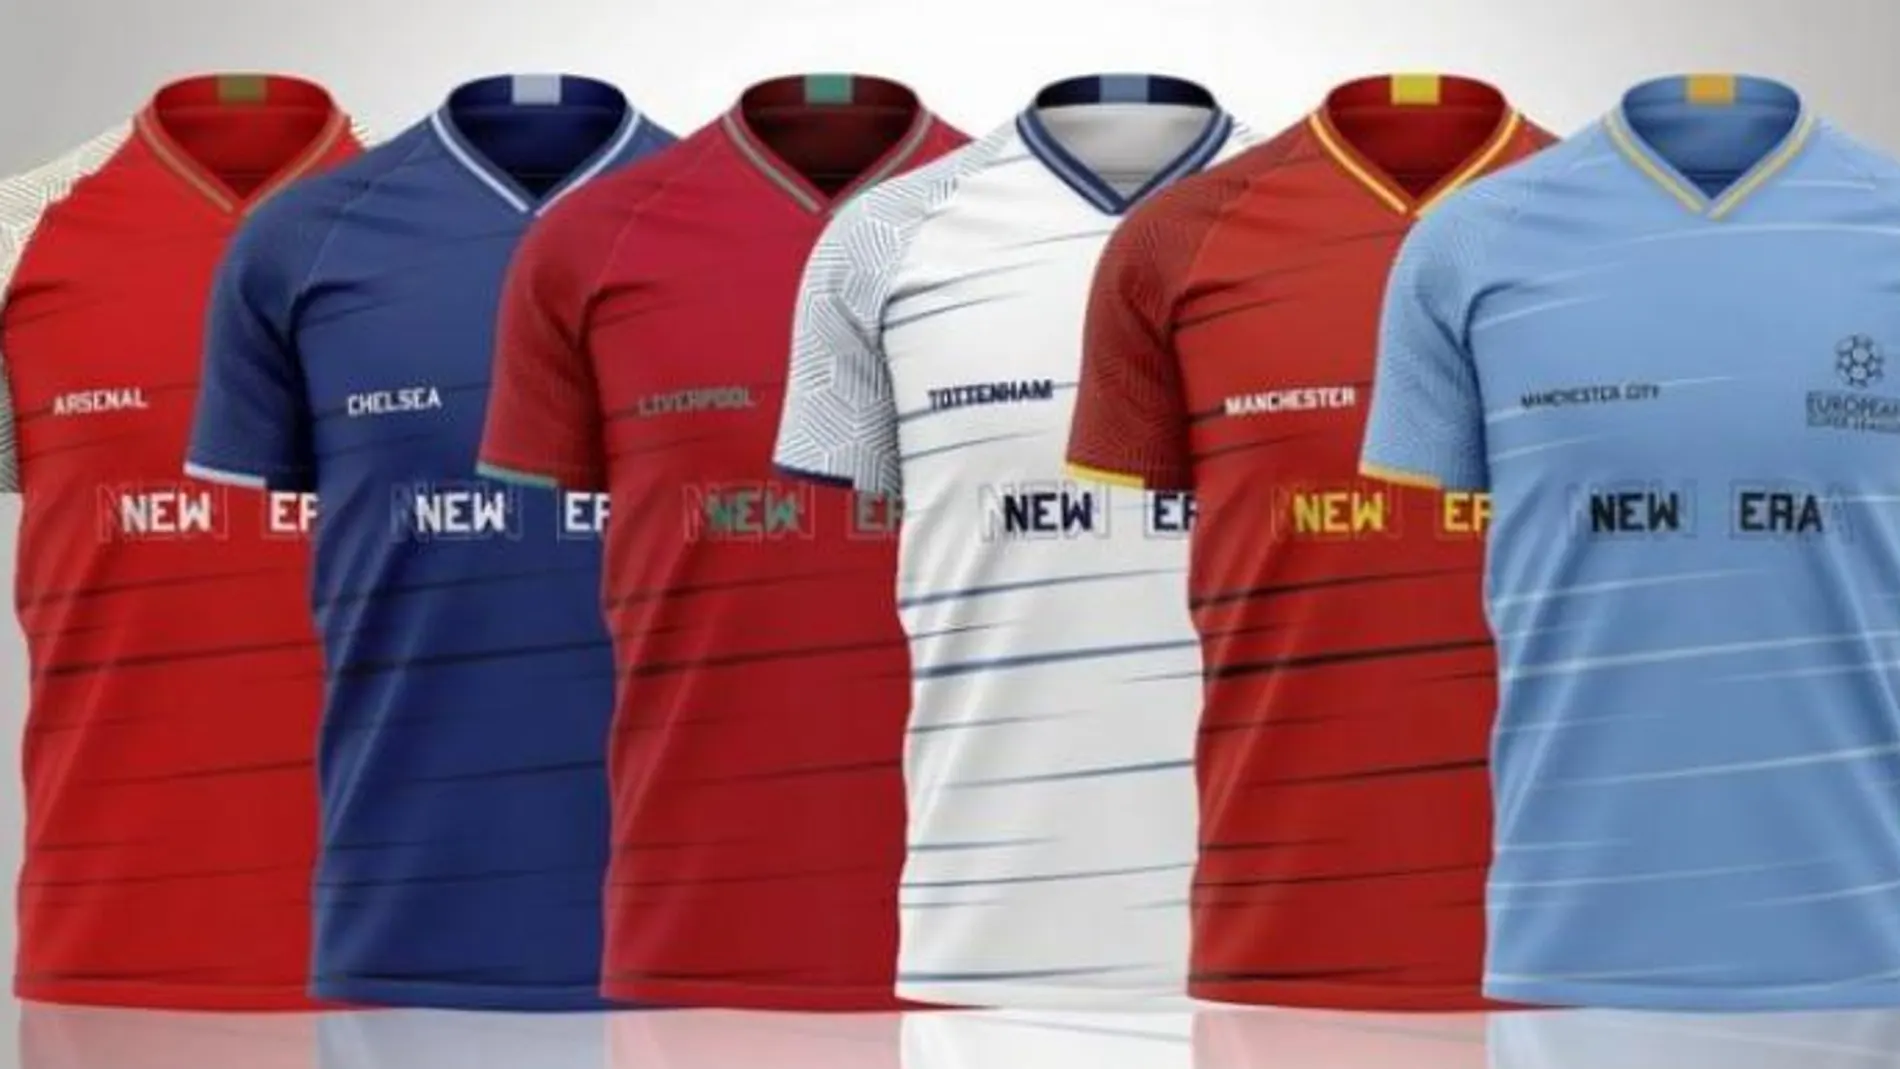 Camisetas de las Superliga de los seis clubes ingleses